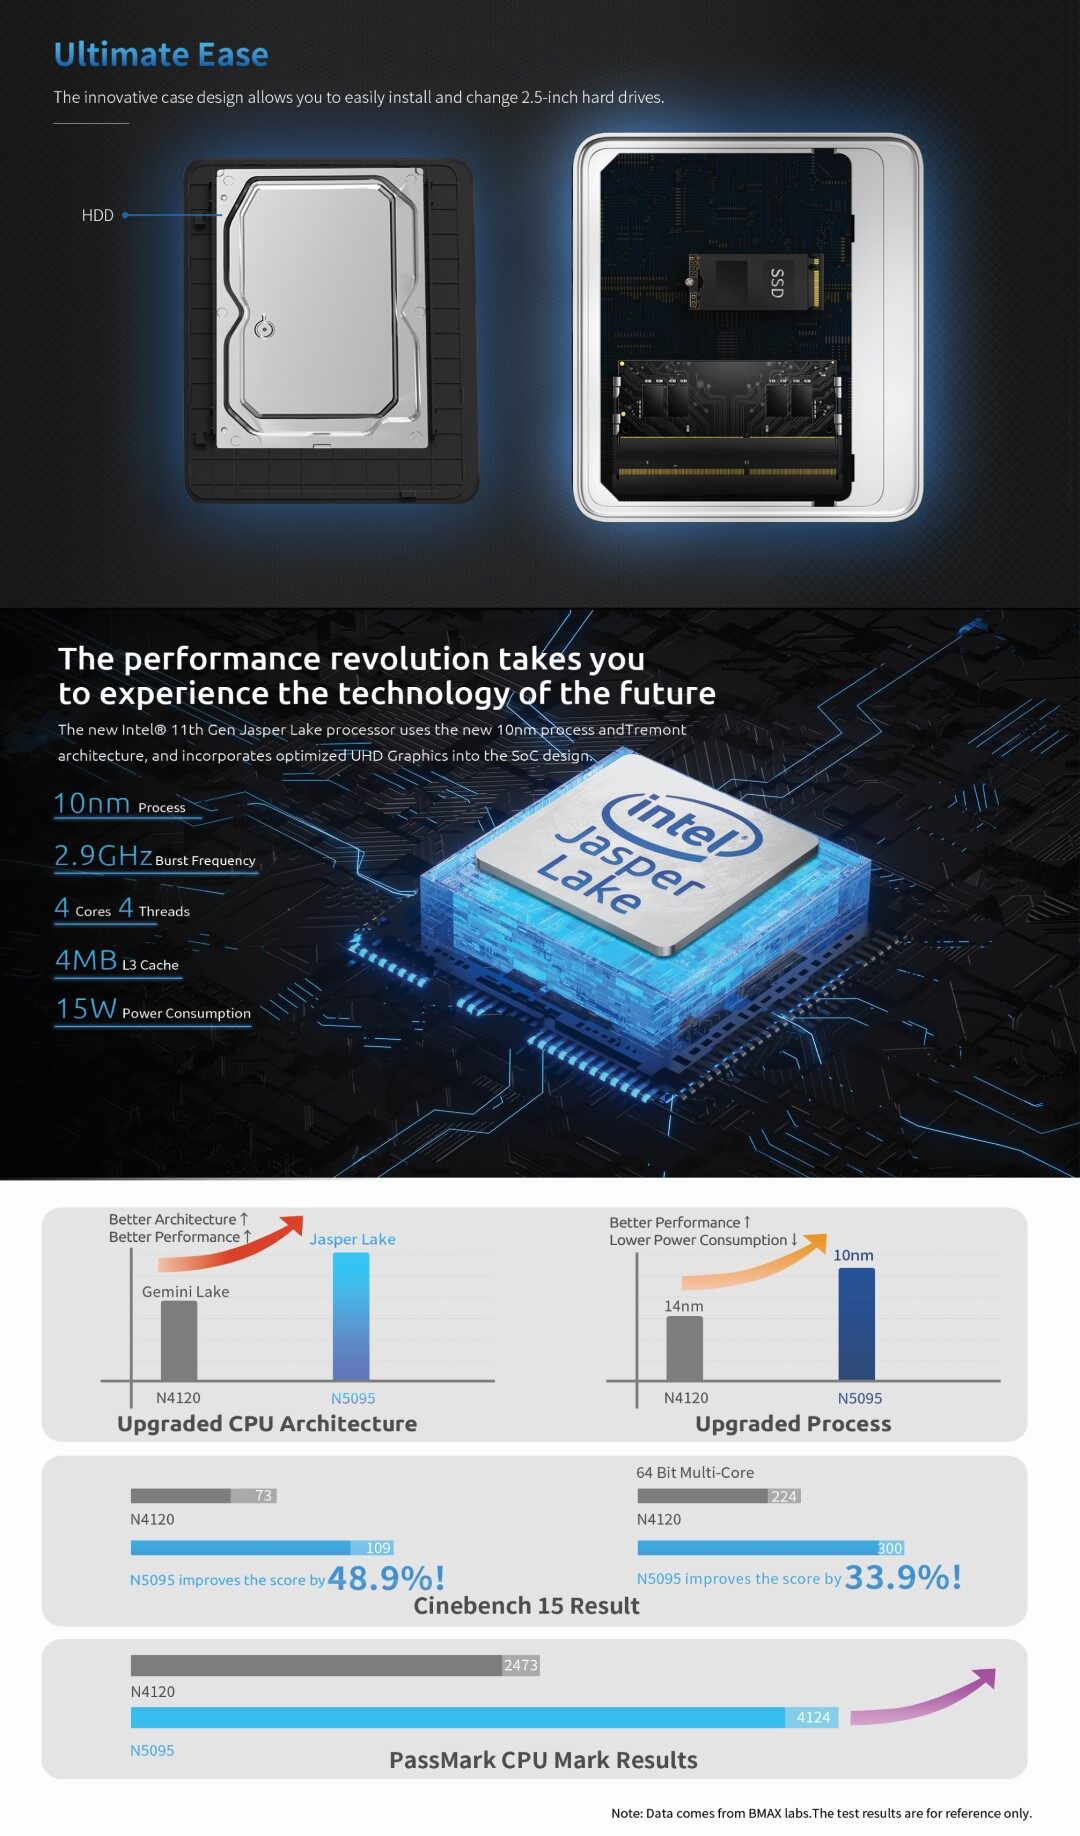 ภาพประกอบของ [ New! 2023 ]  BMAX B3 Mini PC Intel 11th Gen N5095 RAM 16GB + SSD 512GB Windows 11 พร้อมใช้งาน ประกัน 1 ปีในไทย